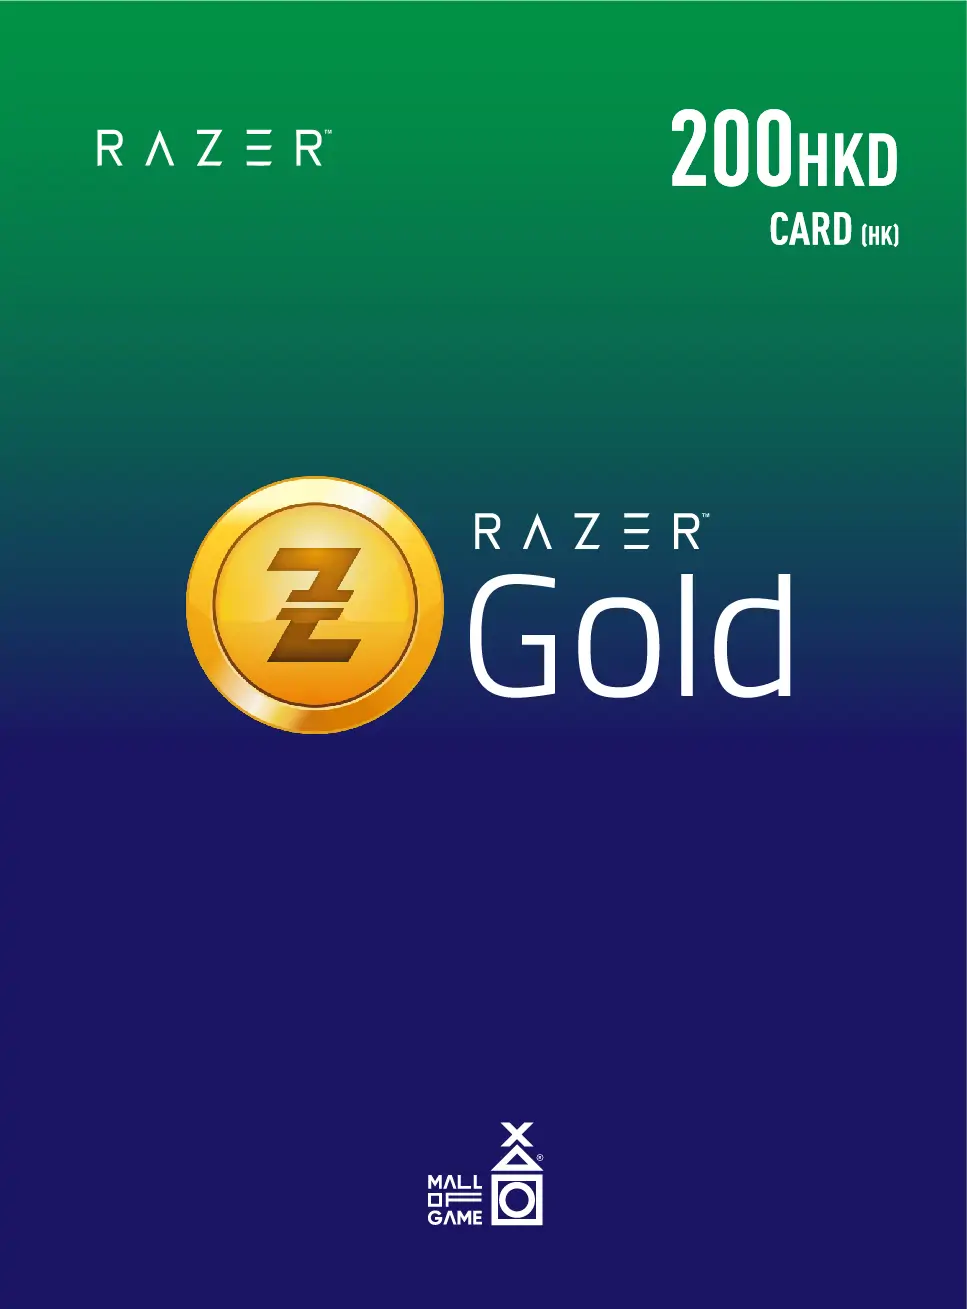 Razer Gold HKD200 (HK)